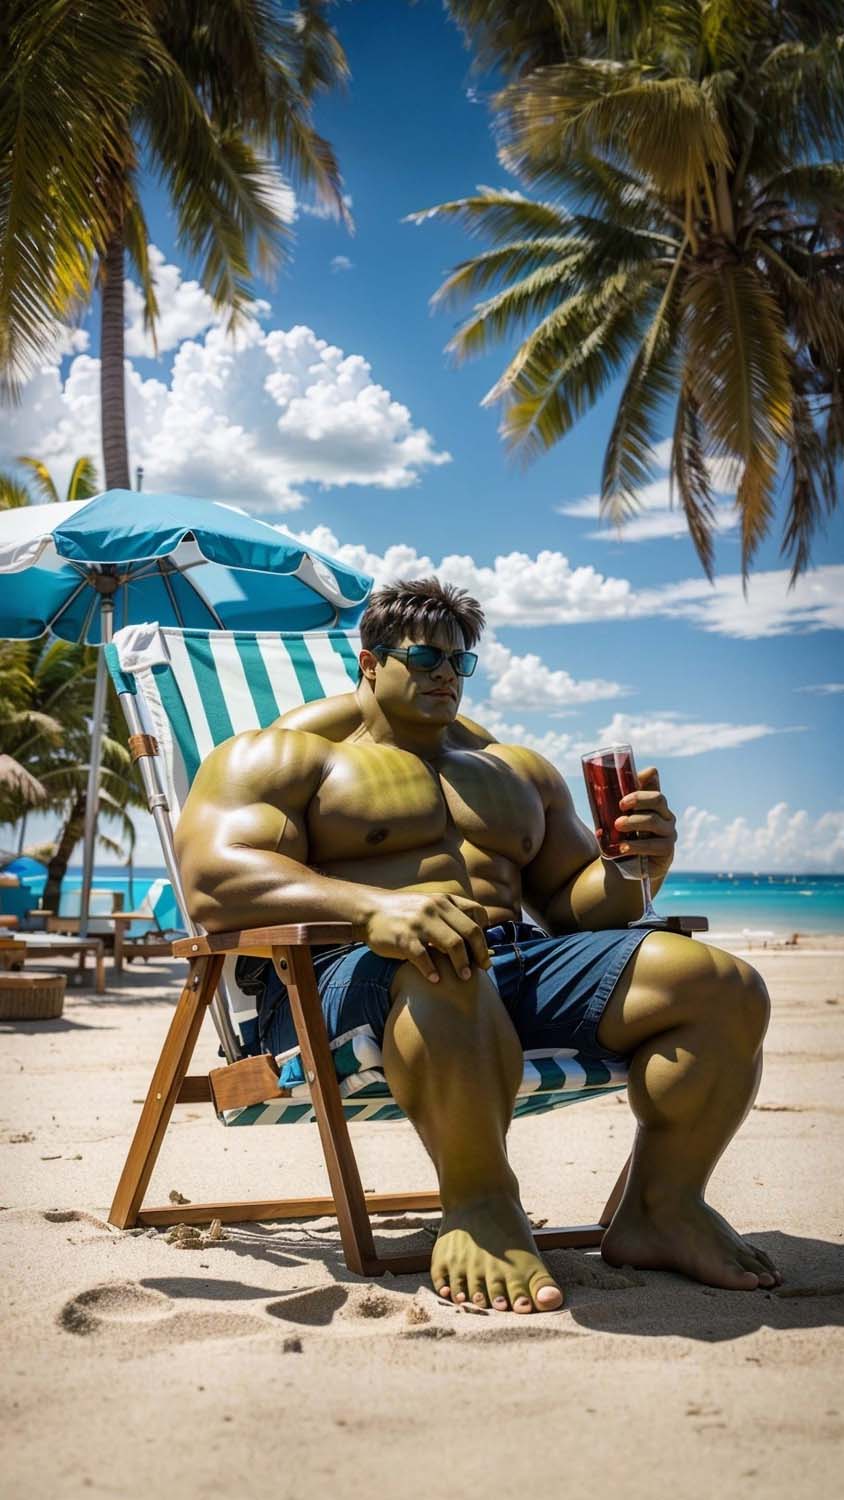 Hulk on Vacation